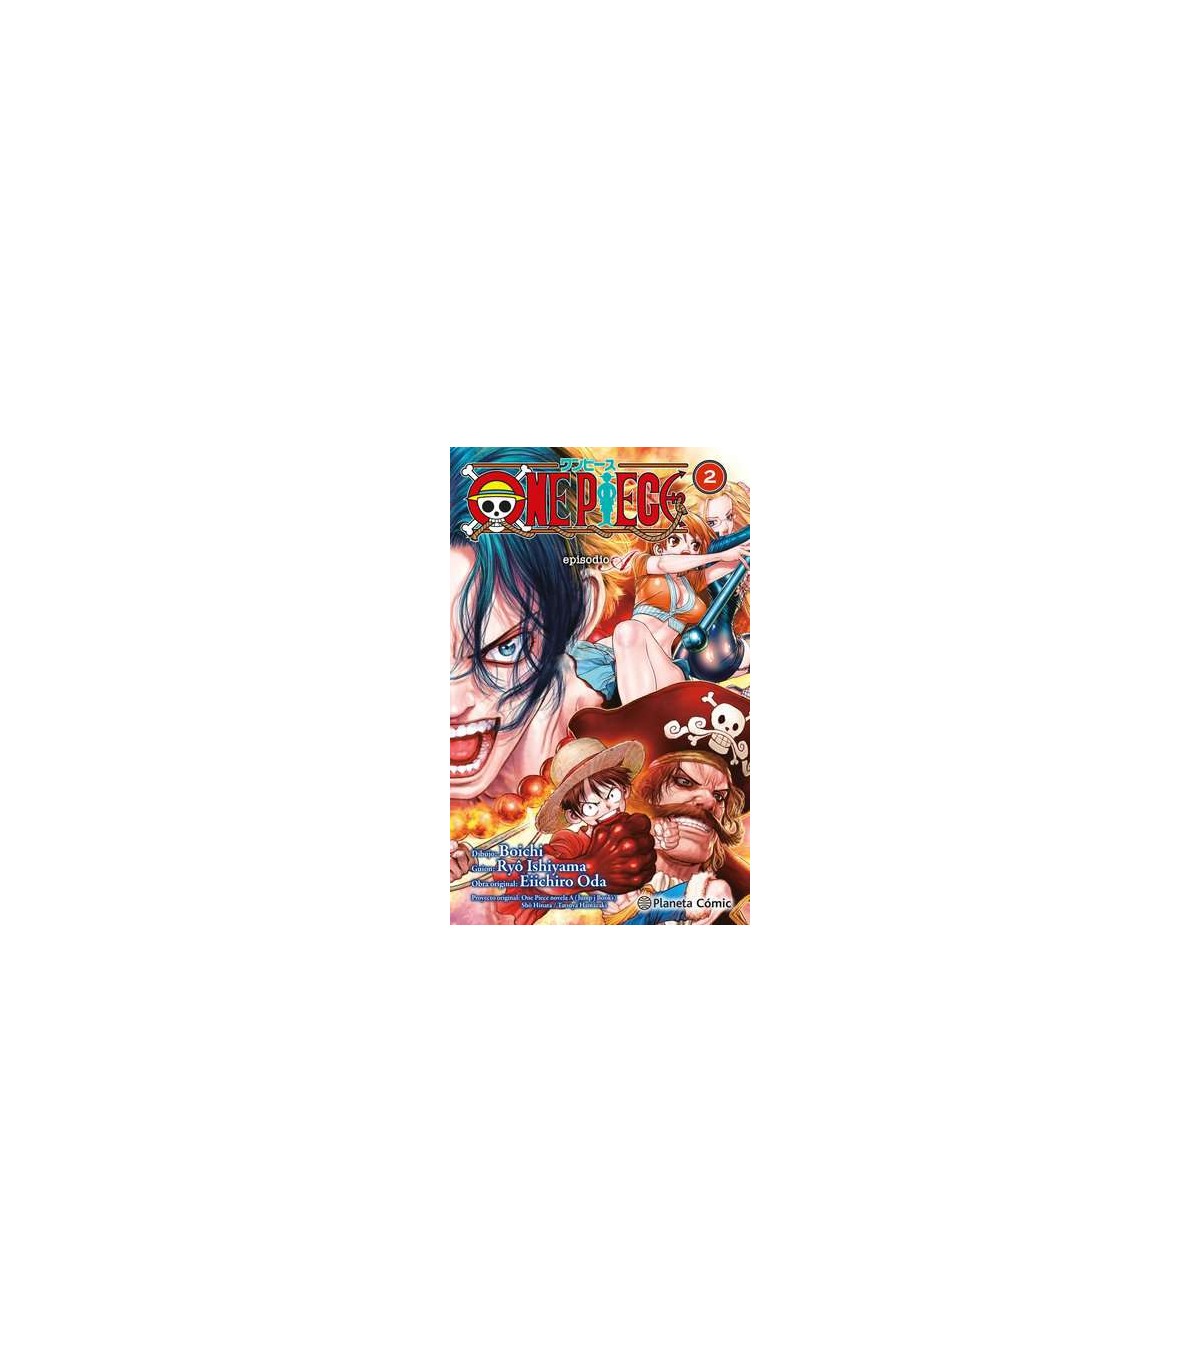 One Piece Episodio A nº 02/02